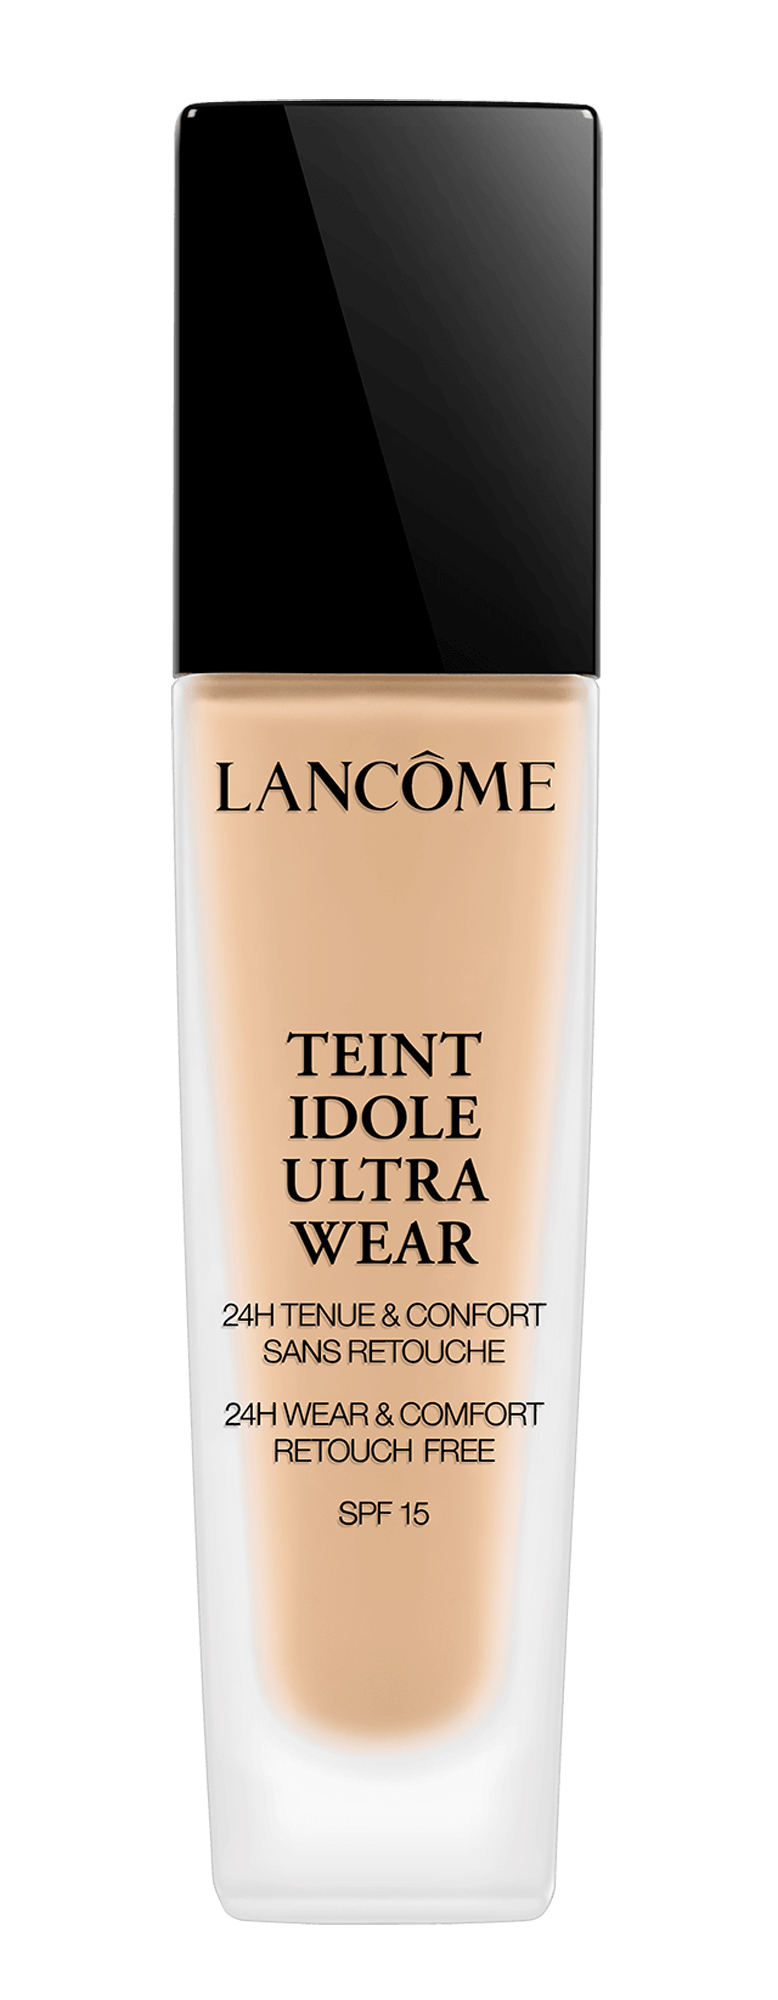 Lancôme – Teint Idole Ultra Wear